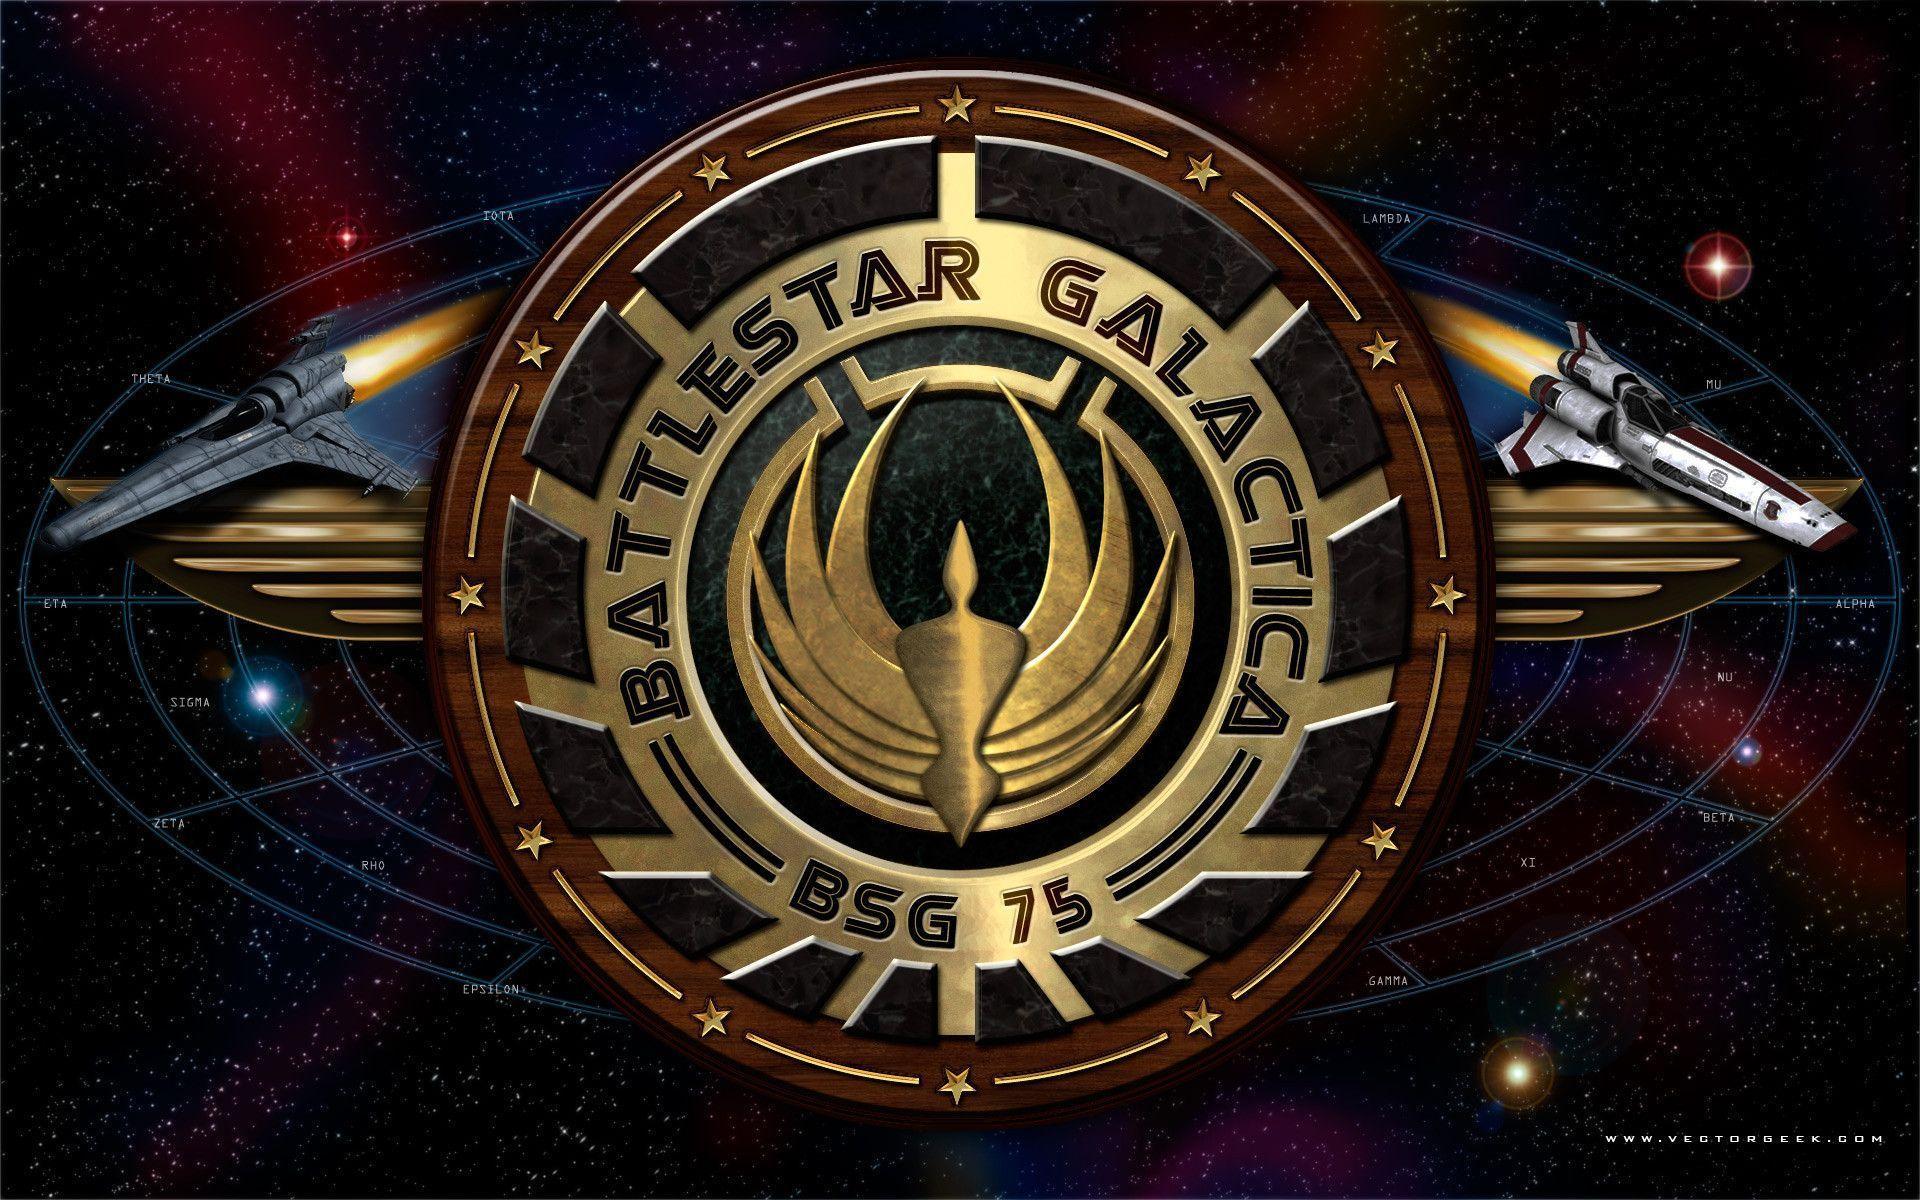 Battlestar Galactica Wallpapers - Wallpaper Cave